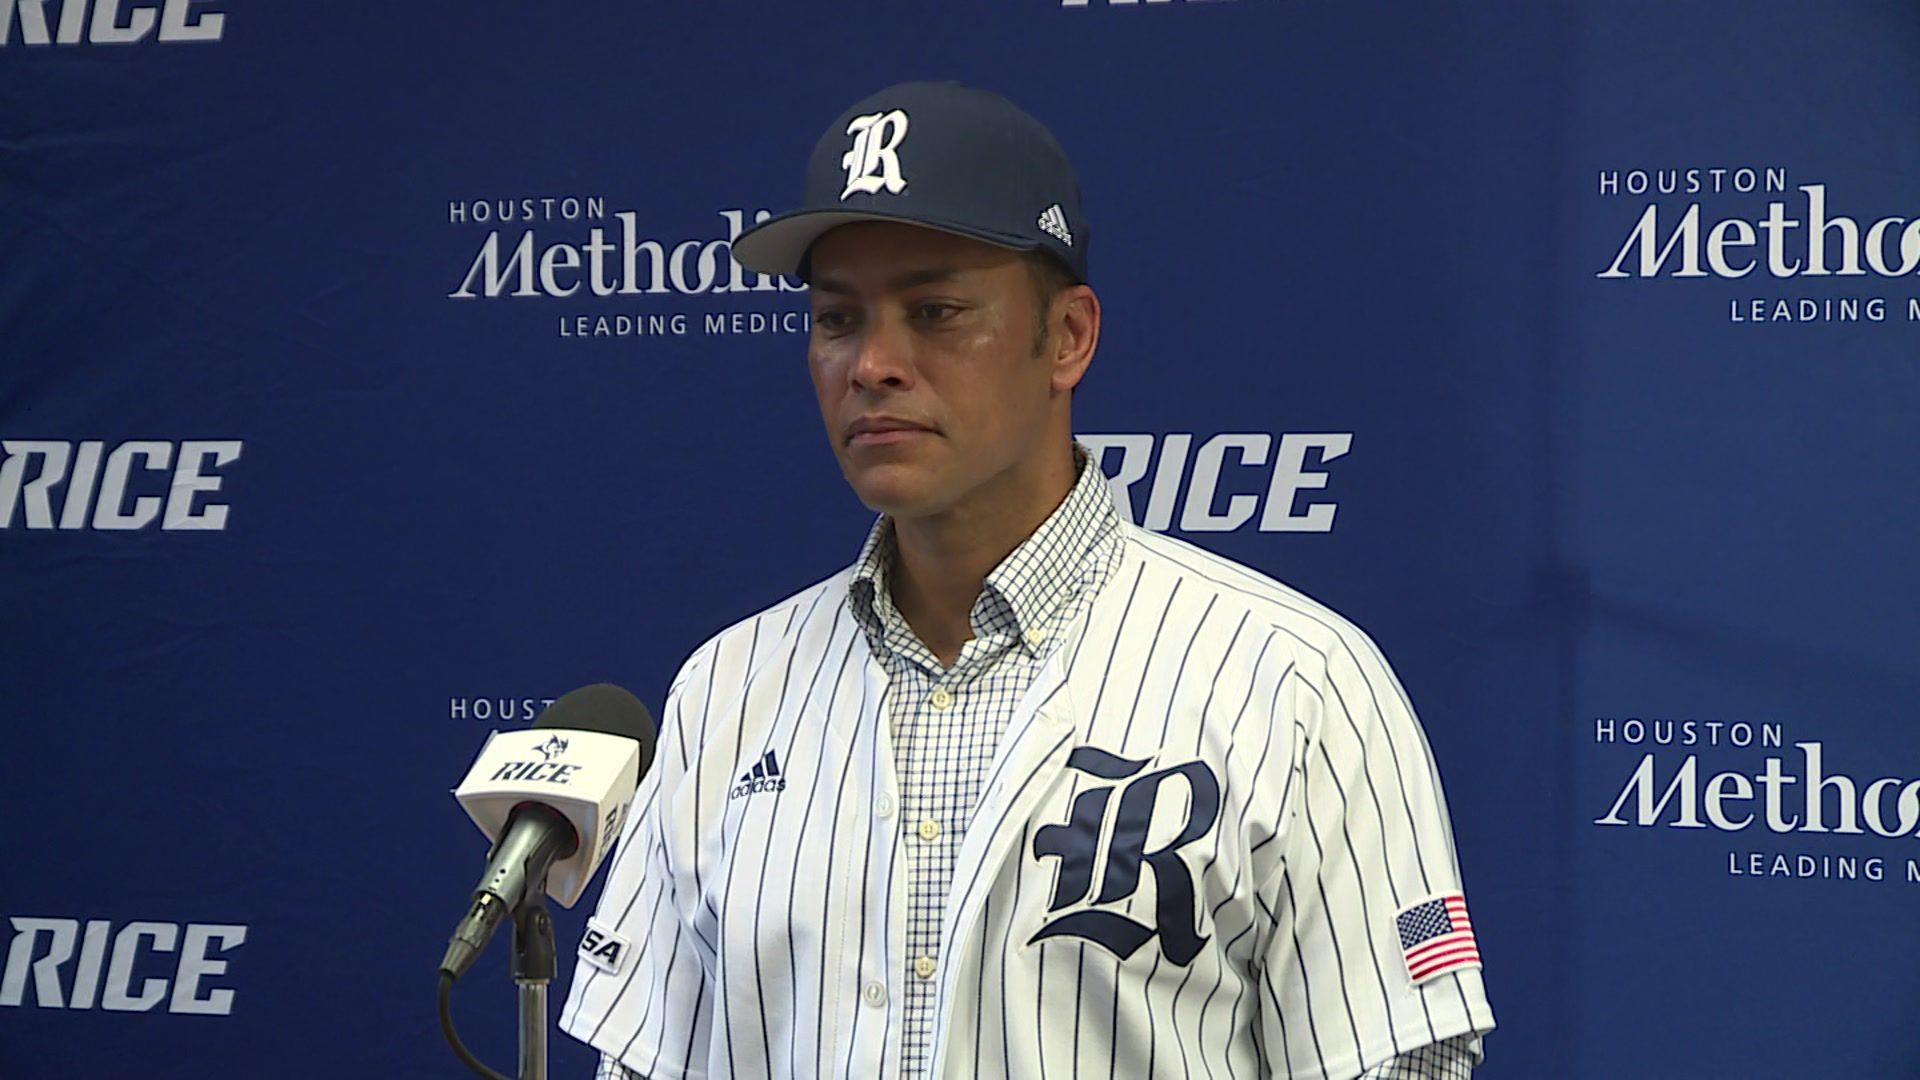 Rice hires Jose Cruz Jr. as next baseball coach